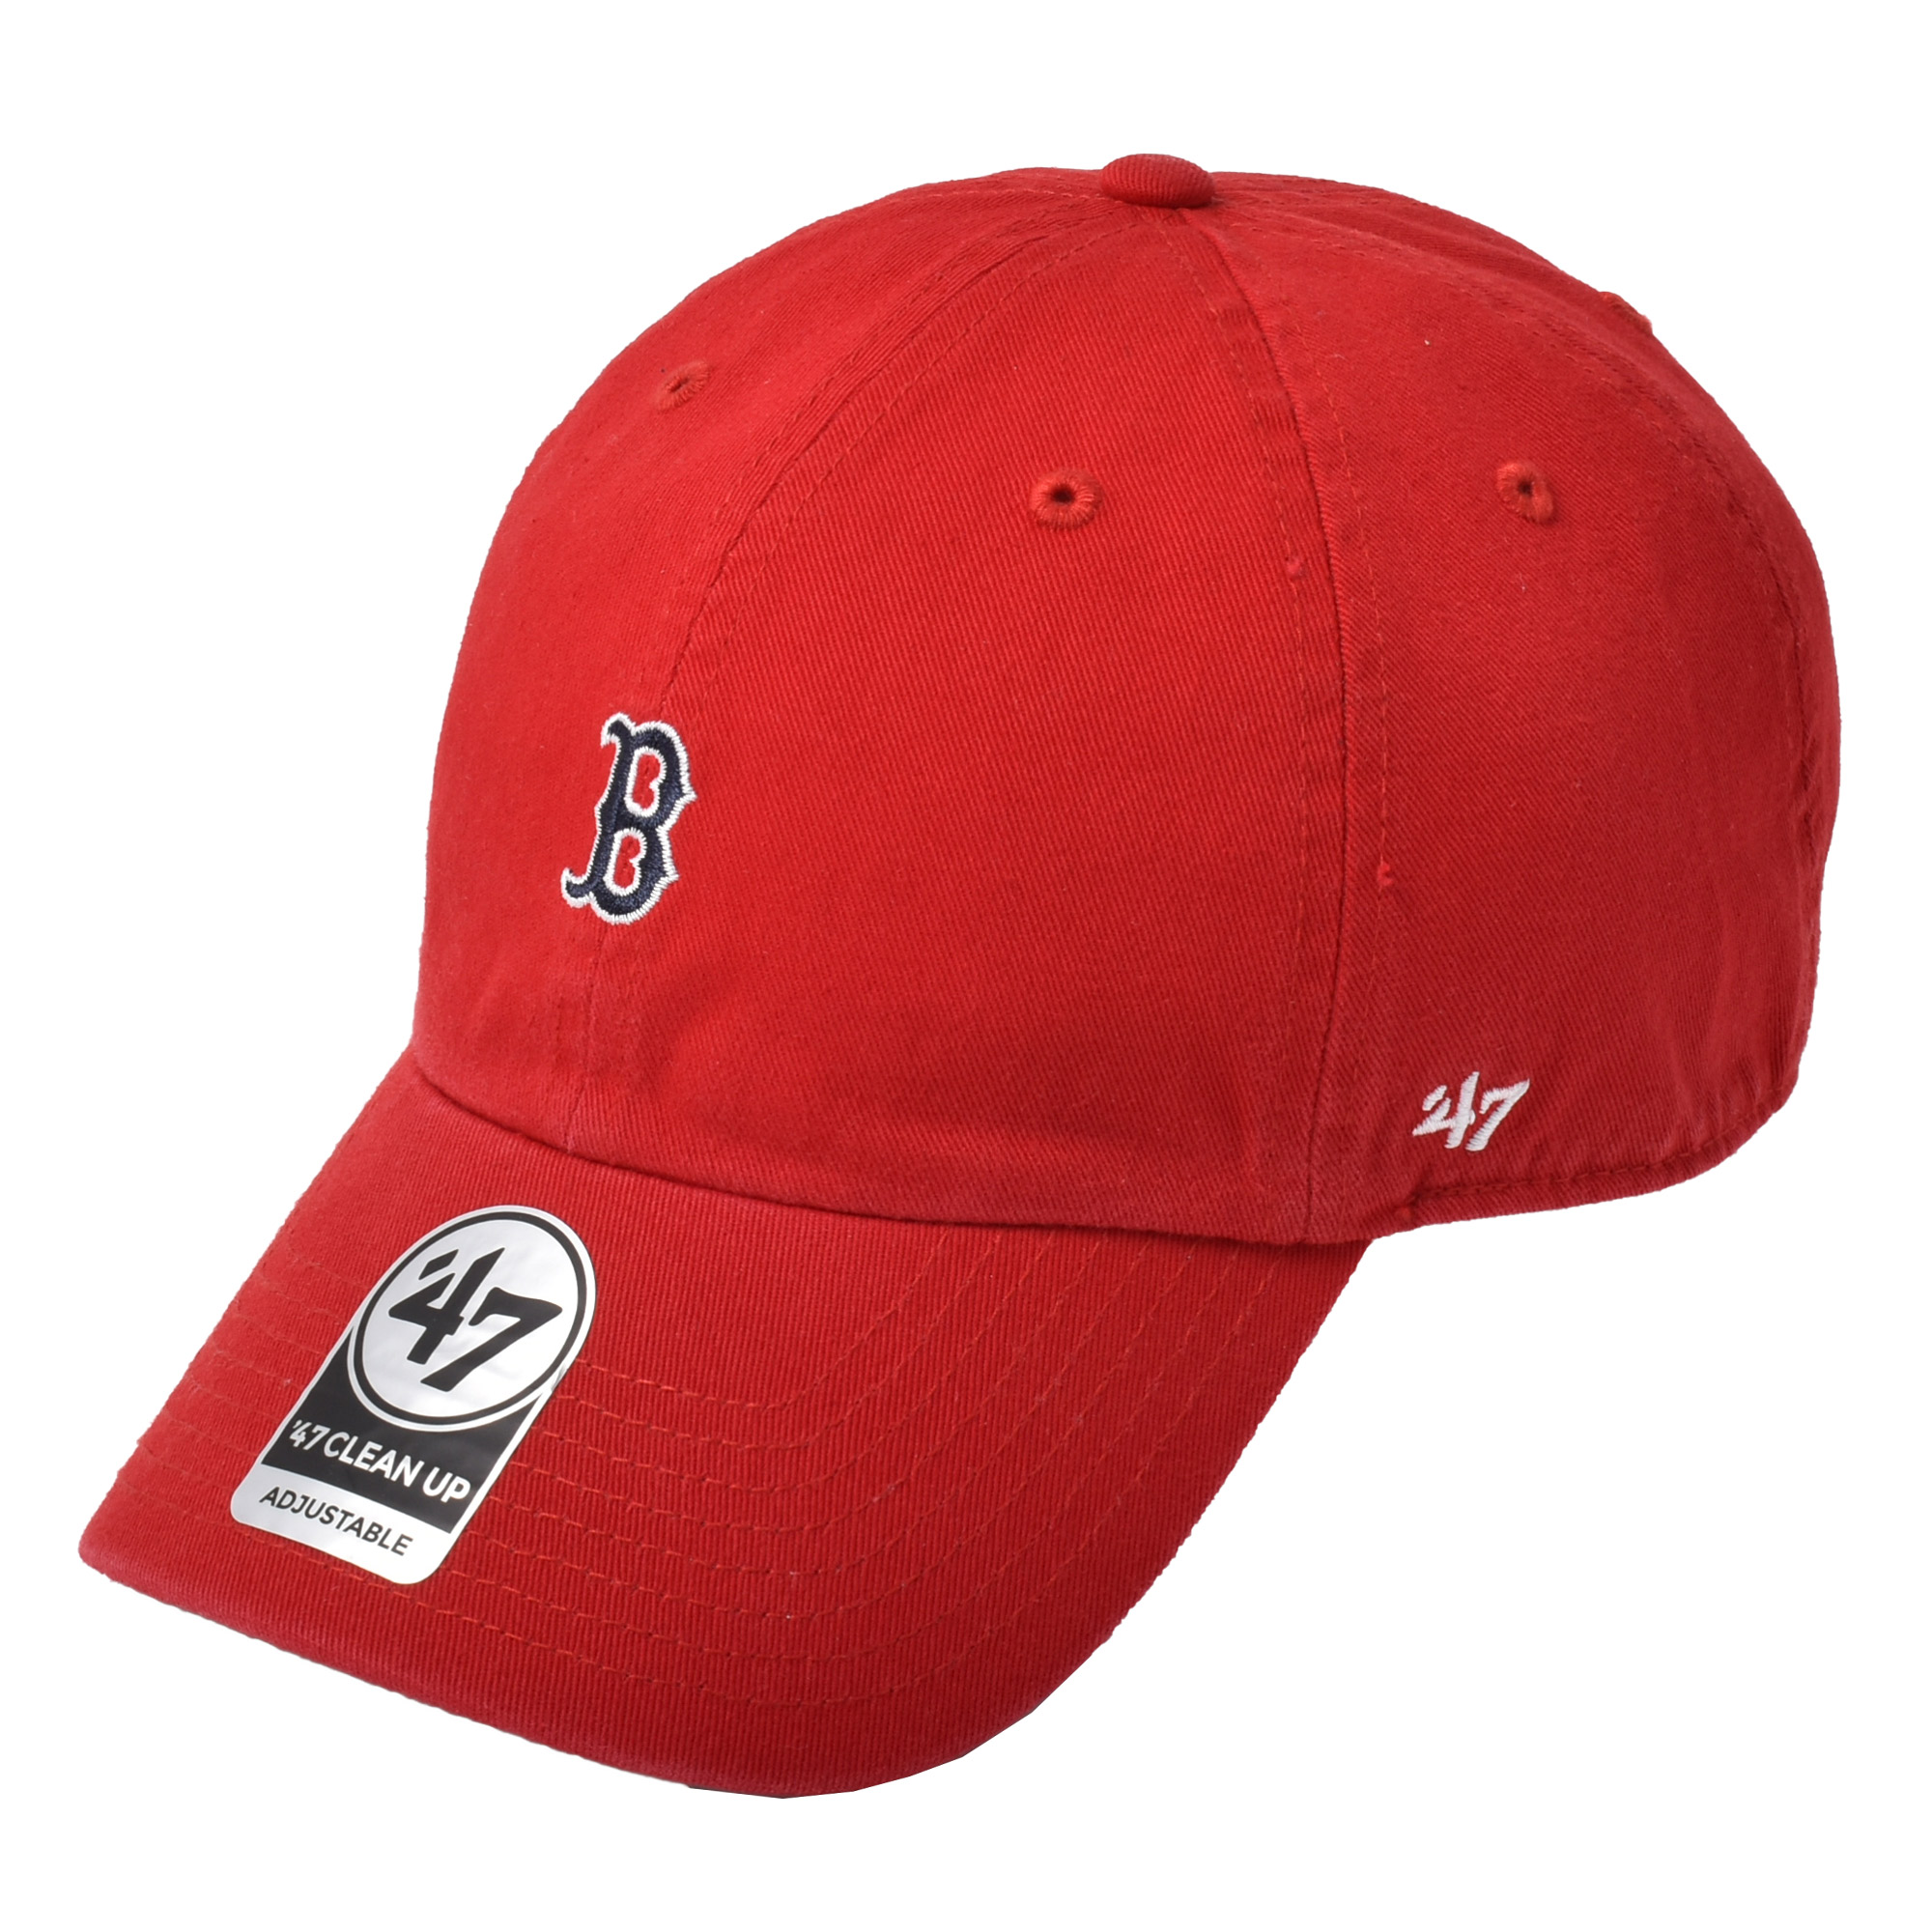 SALE （ゆうパケット送料無料） 47 ブランド キャップ 帽子 メンズ レディース ボストン キ...